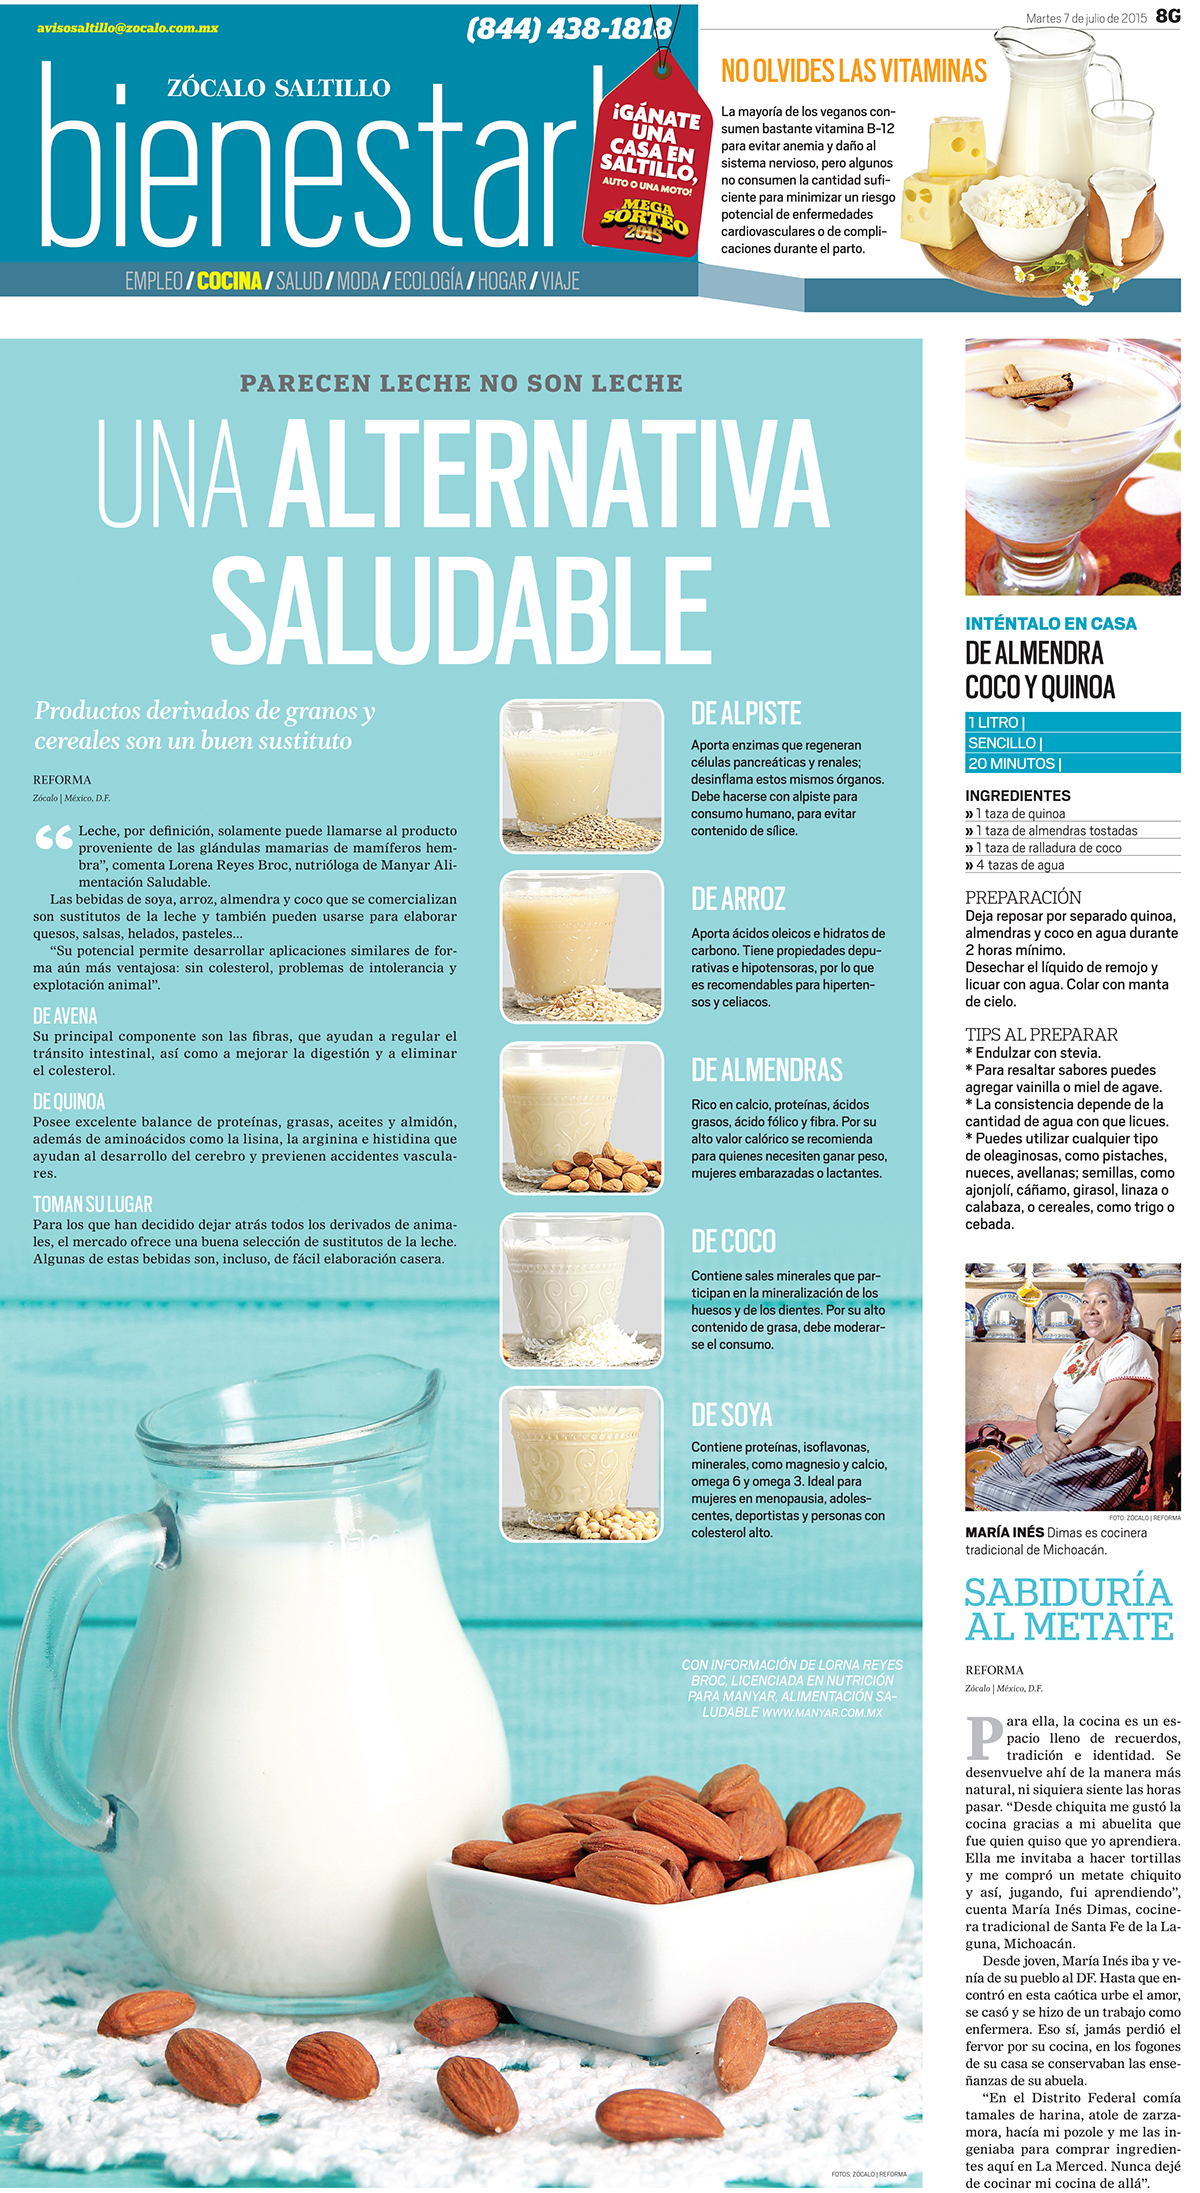 Diseño editorial diseño gráfico newspaper cocina gastronomia